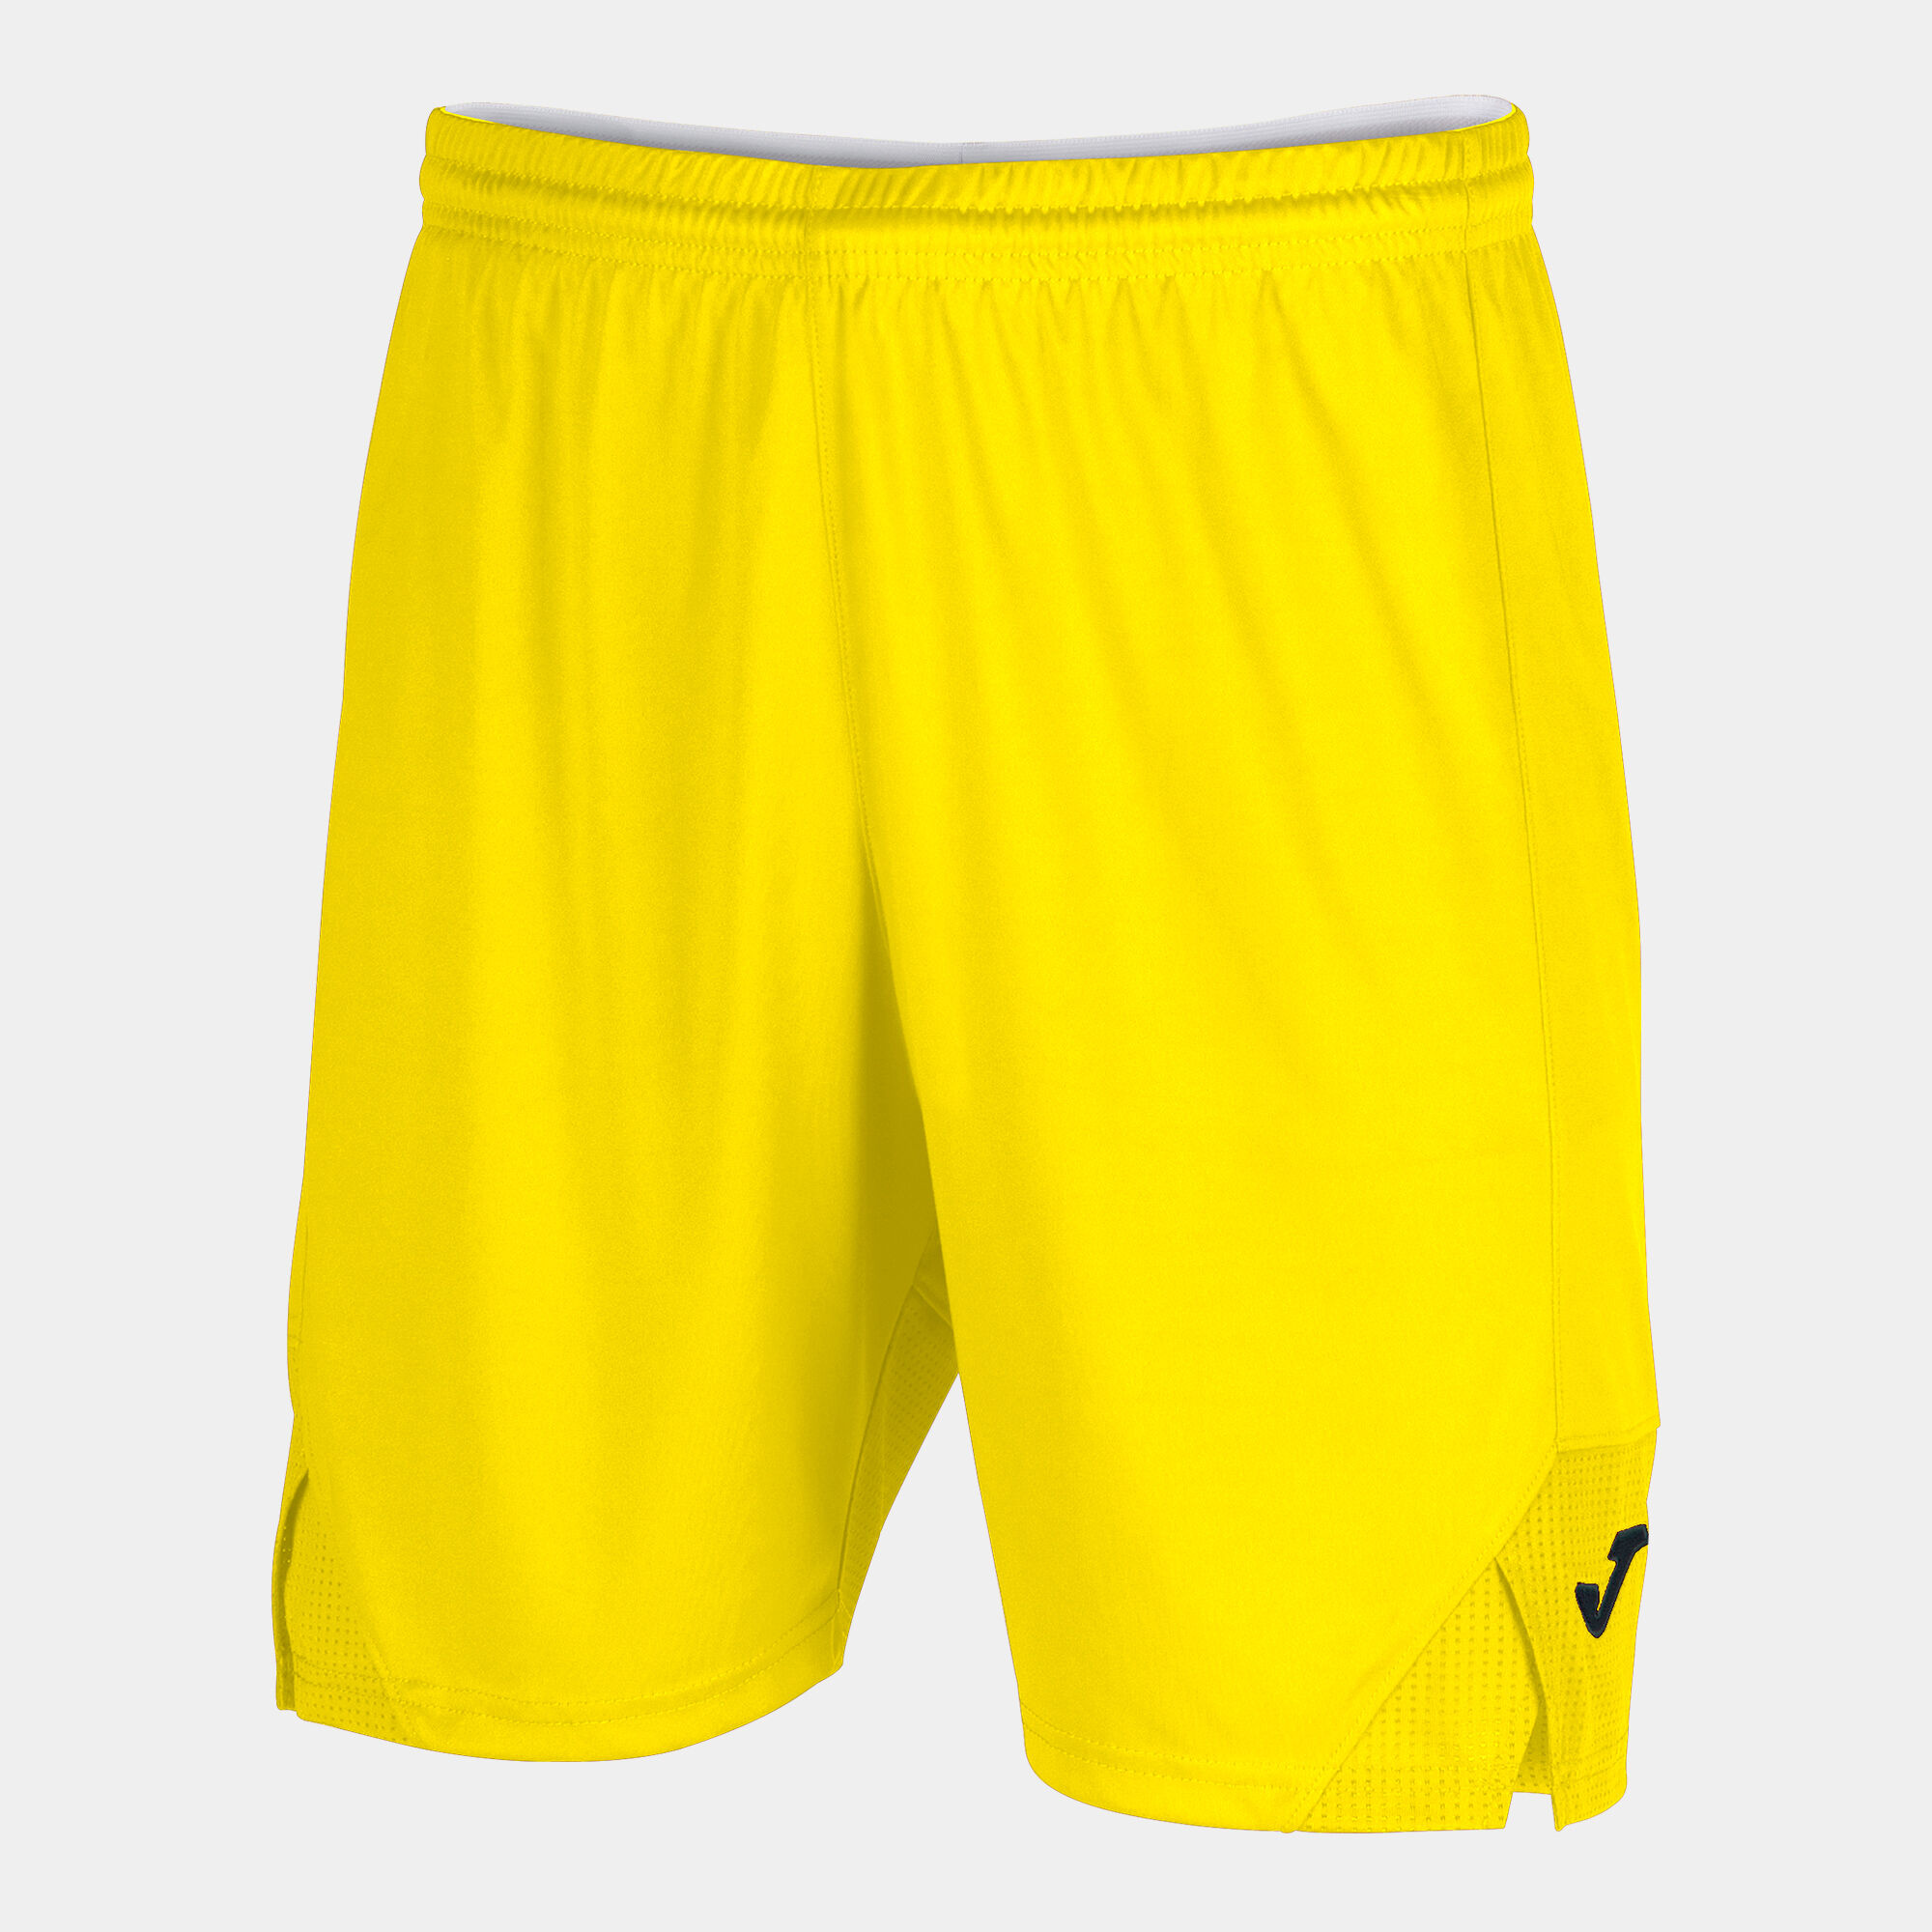 Shorts man Toledo II yellow